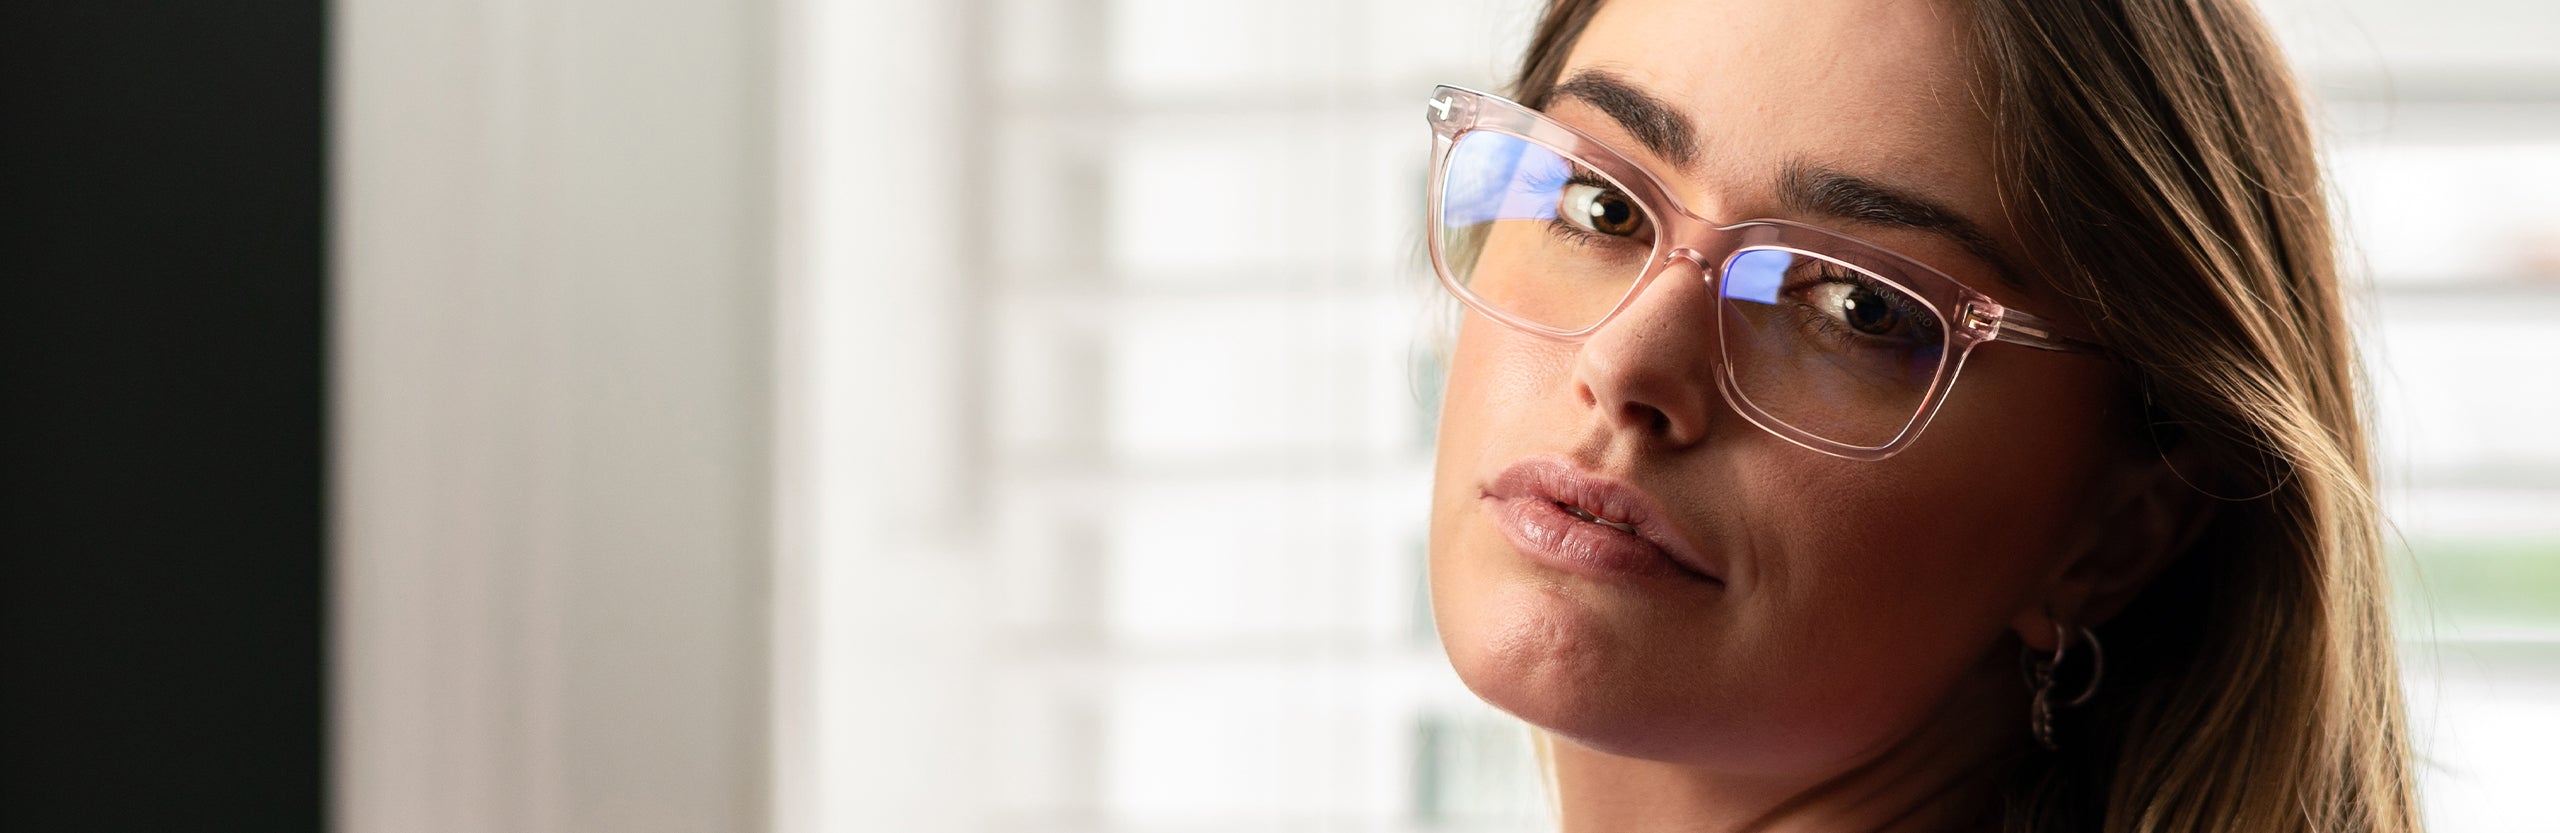 Rectangle Prescription Glasses Frames Online for Women/Men丨ELKLOOK